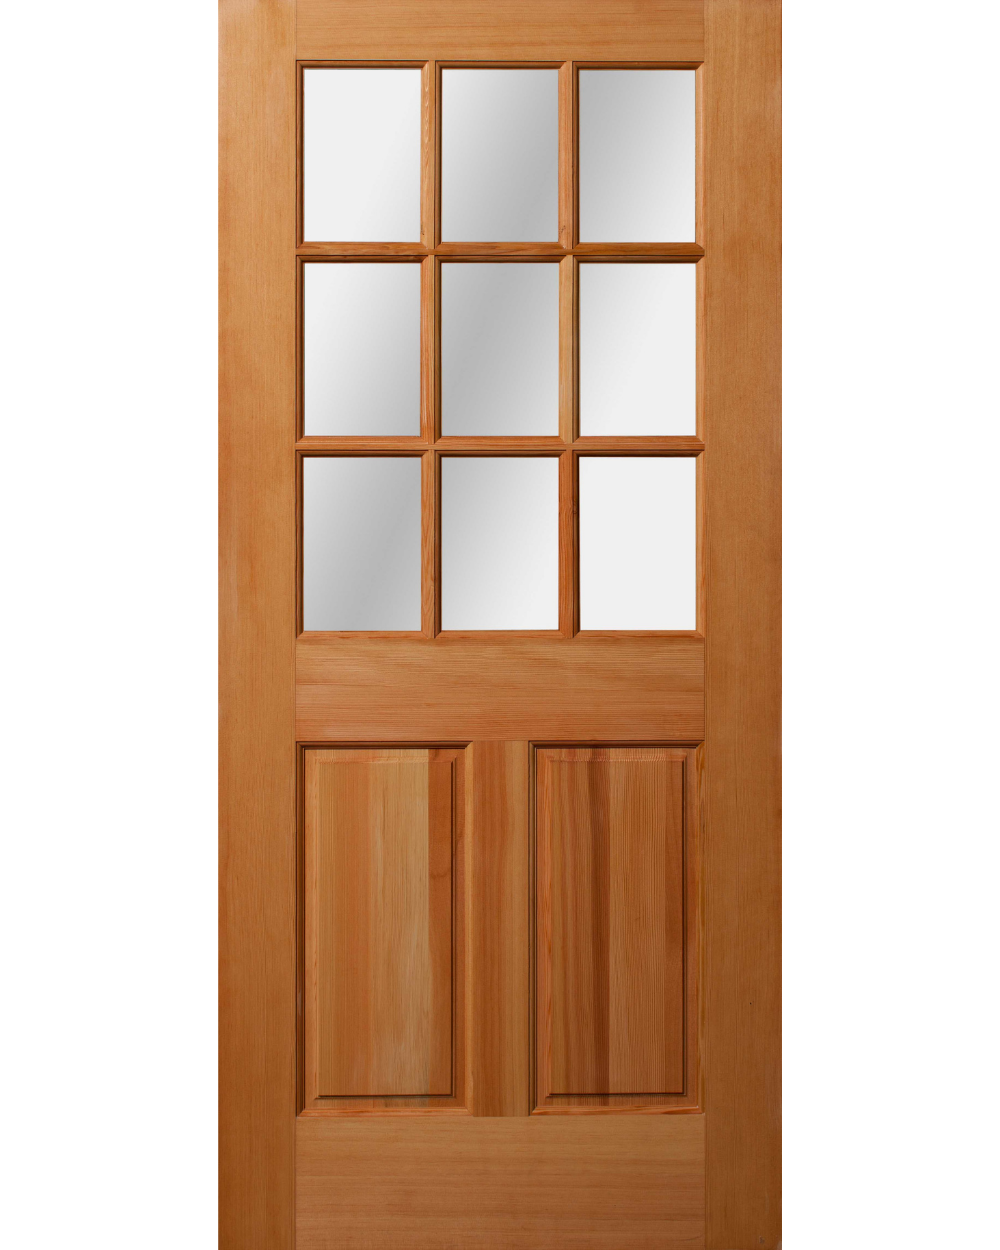 Fir 9 Lite Over Two Raised Panels Exterior Door